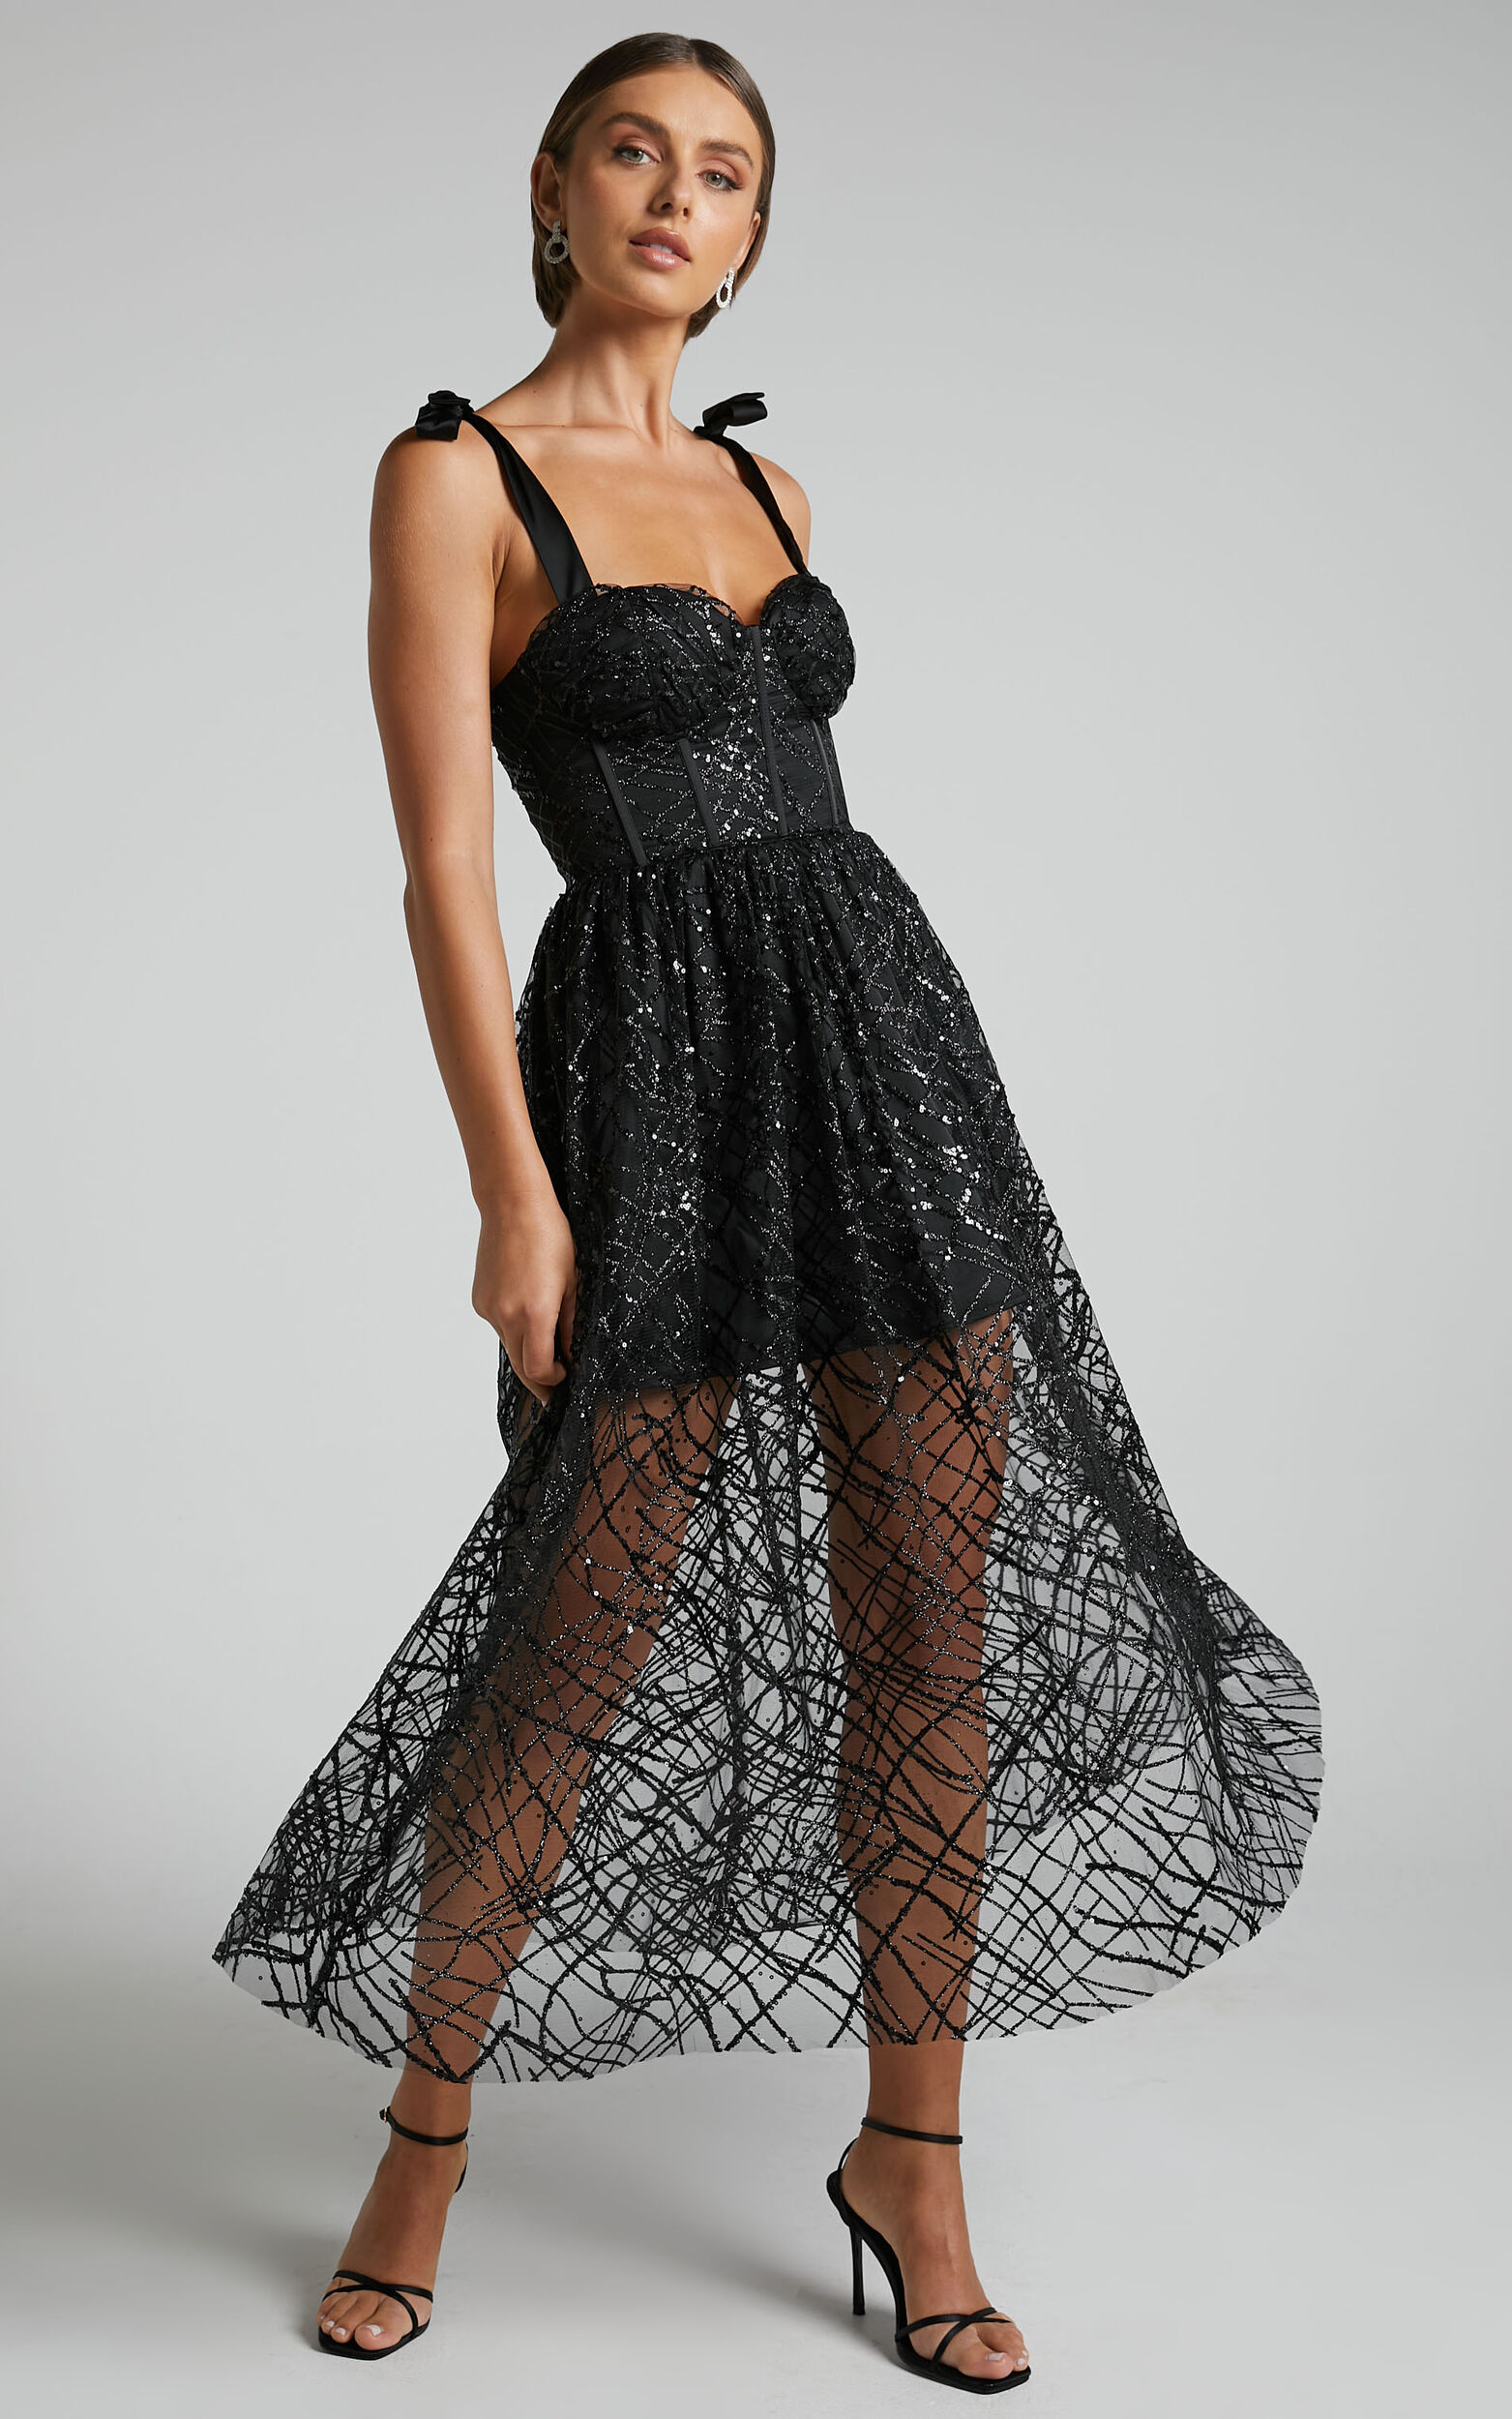 Rimea Midaxi Dress - Tie Shoulder Bustier Bodice Glitter Tulle Dress in Black - 06, BLK1